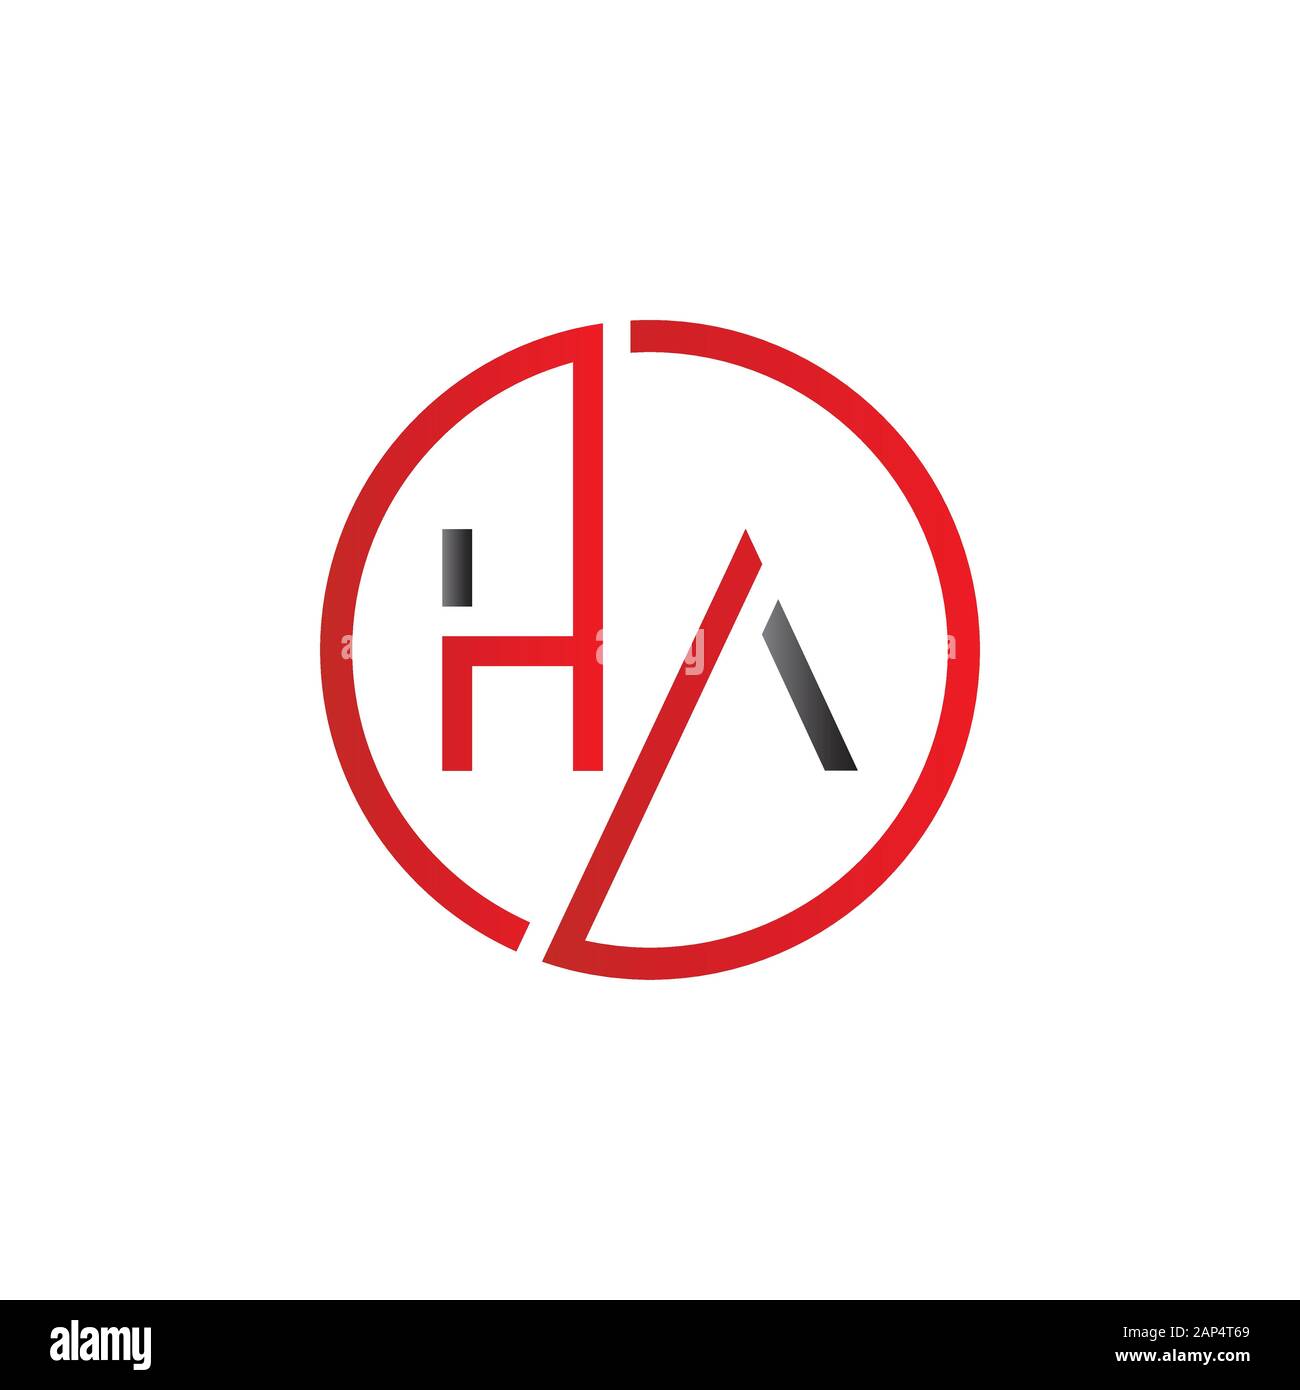 letter HA Logo Design Vector Template. Initial Linked Letter HA Vector Illustration Stock Vector